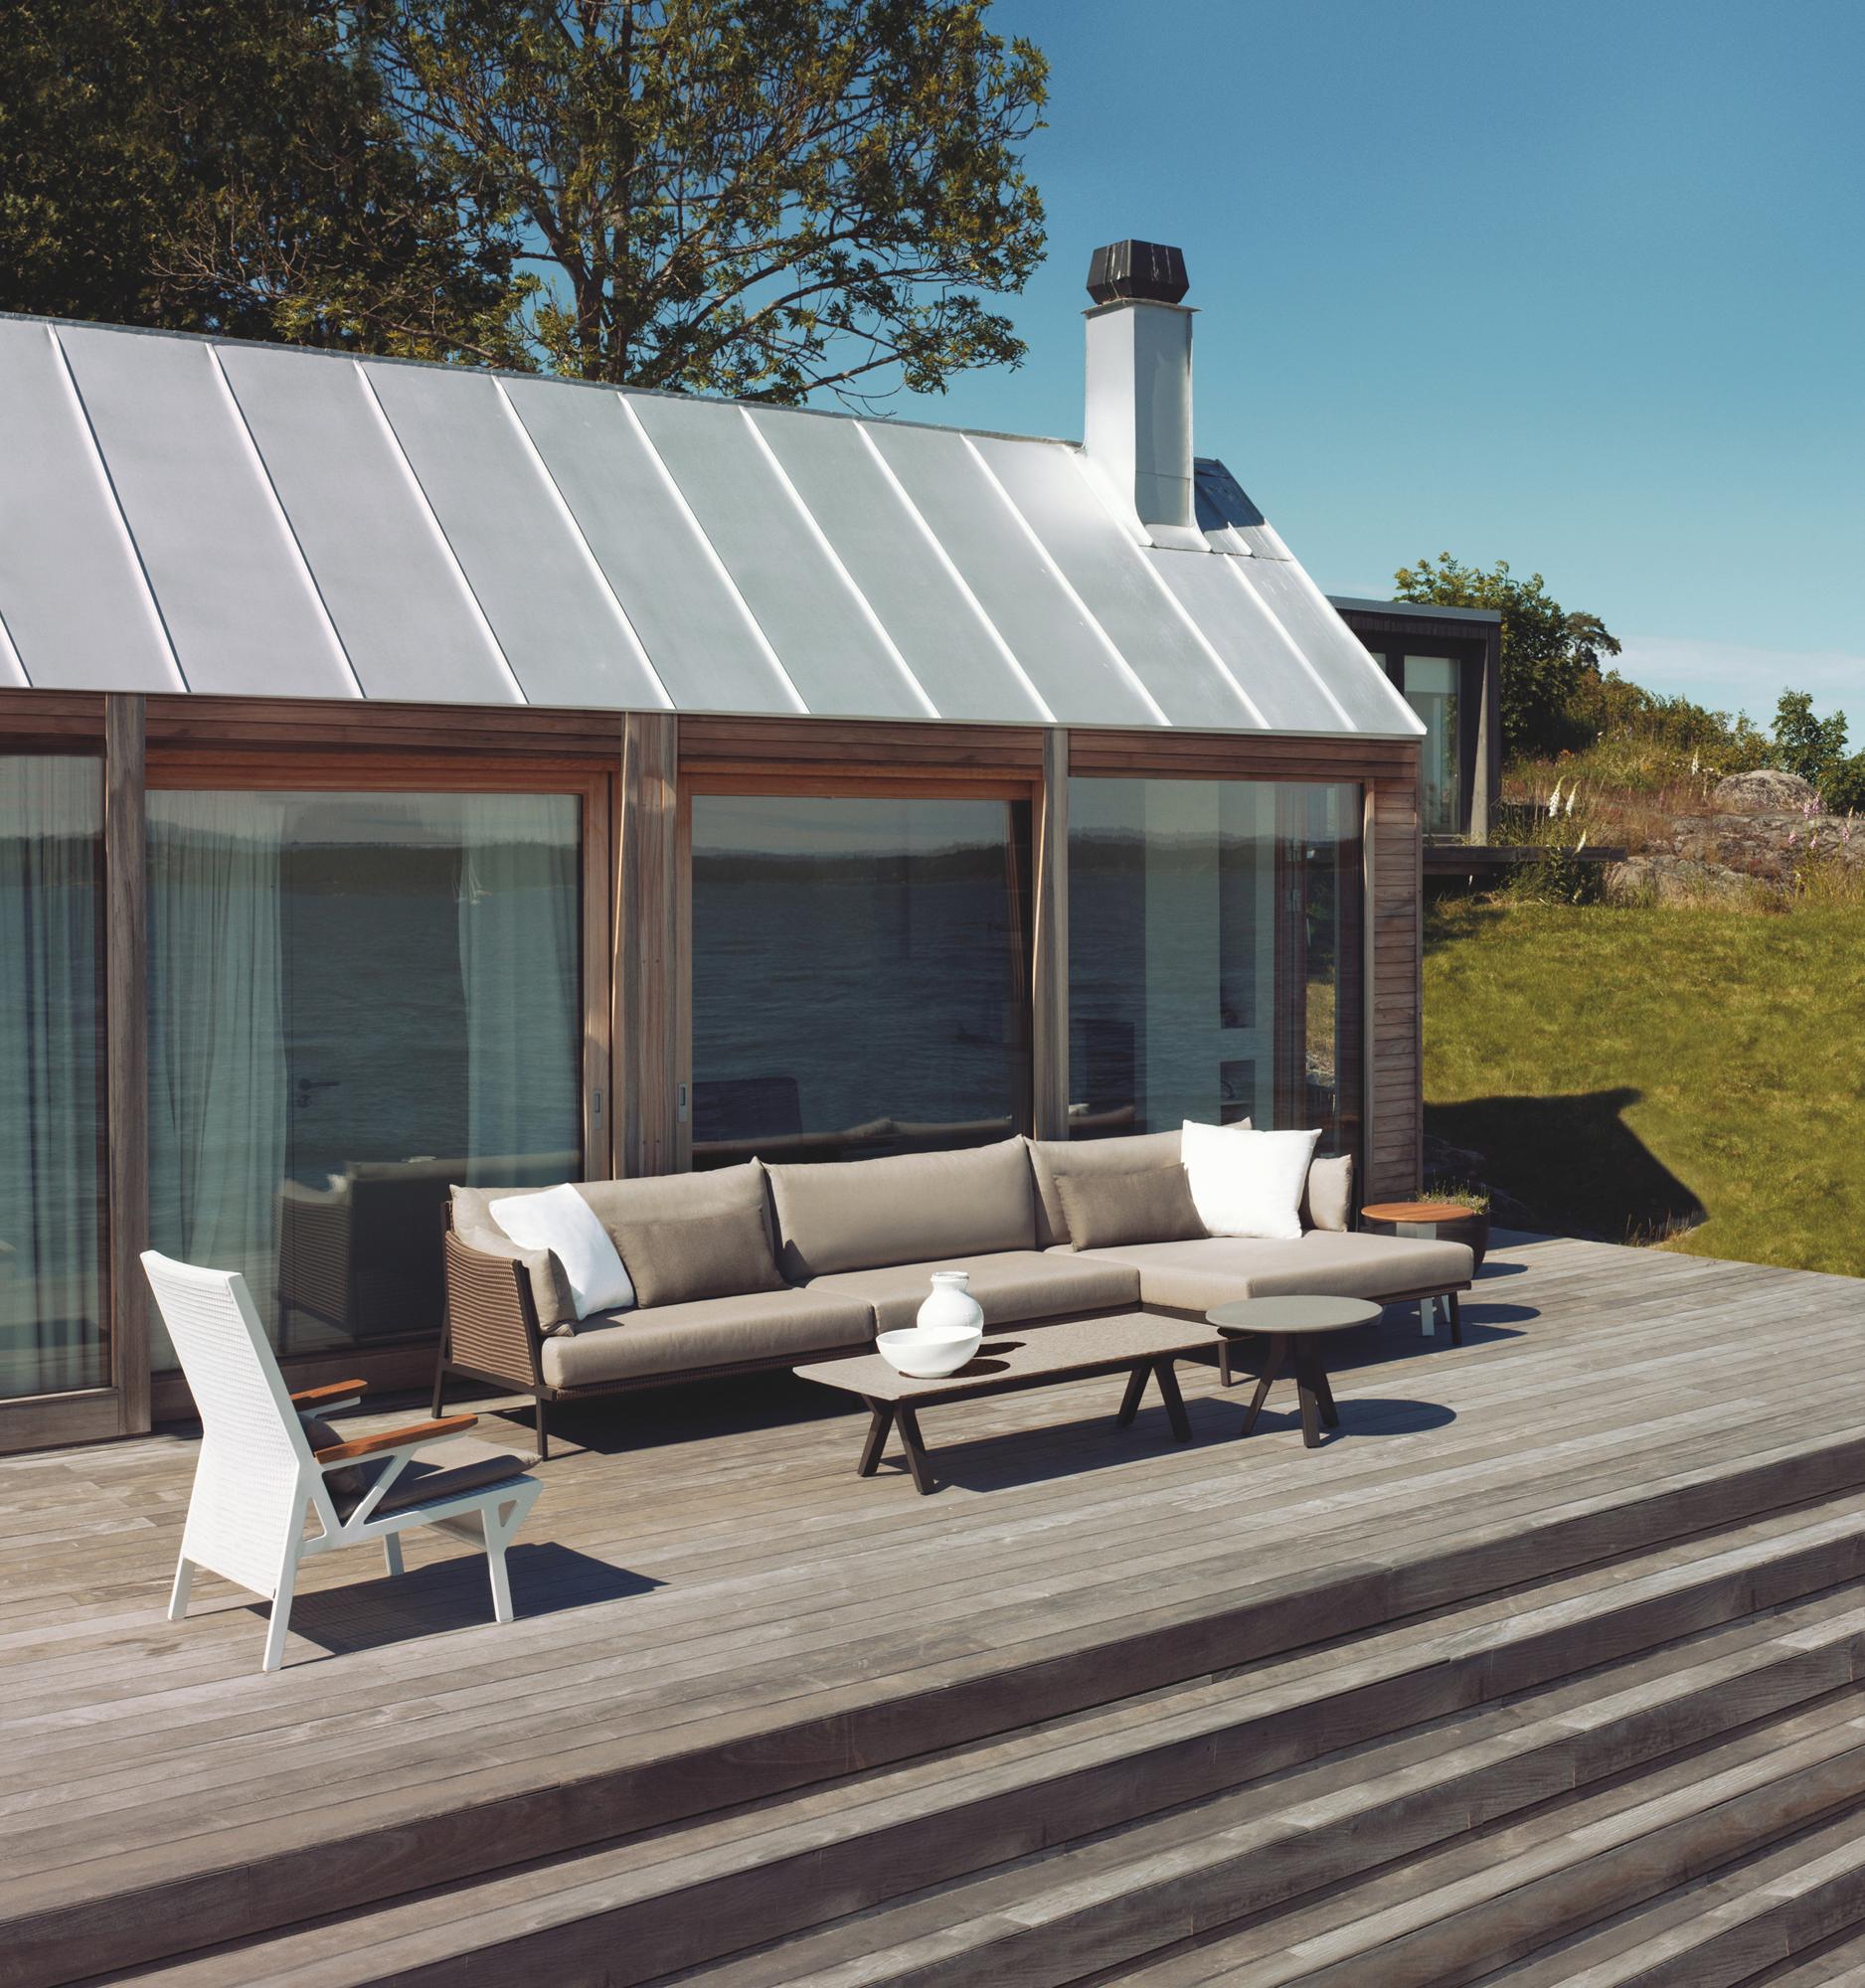 Terrasse mit grauen Sofa #couchtisch #terrasse #sofakissen #sofa #grauessofa ©Kettal